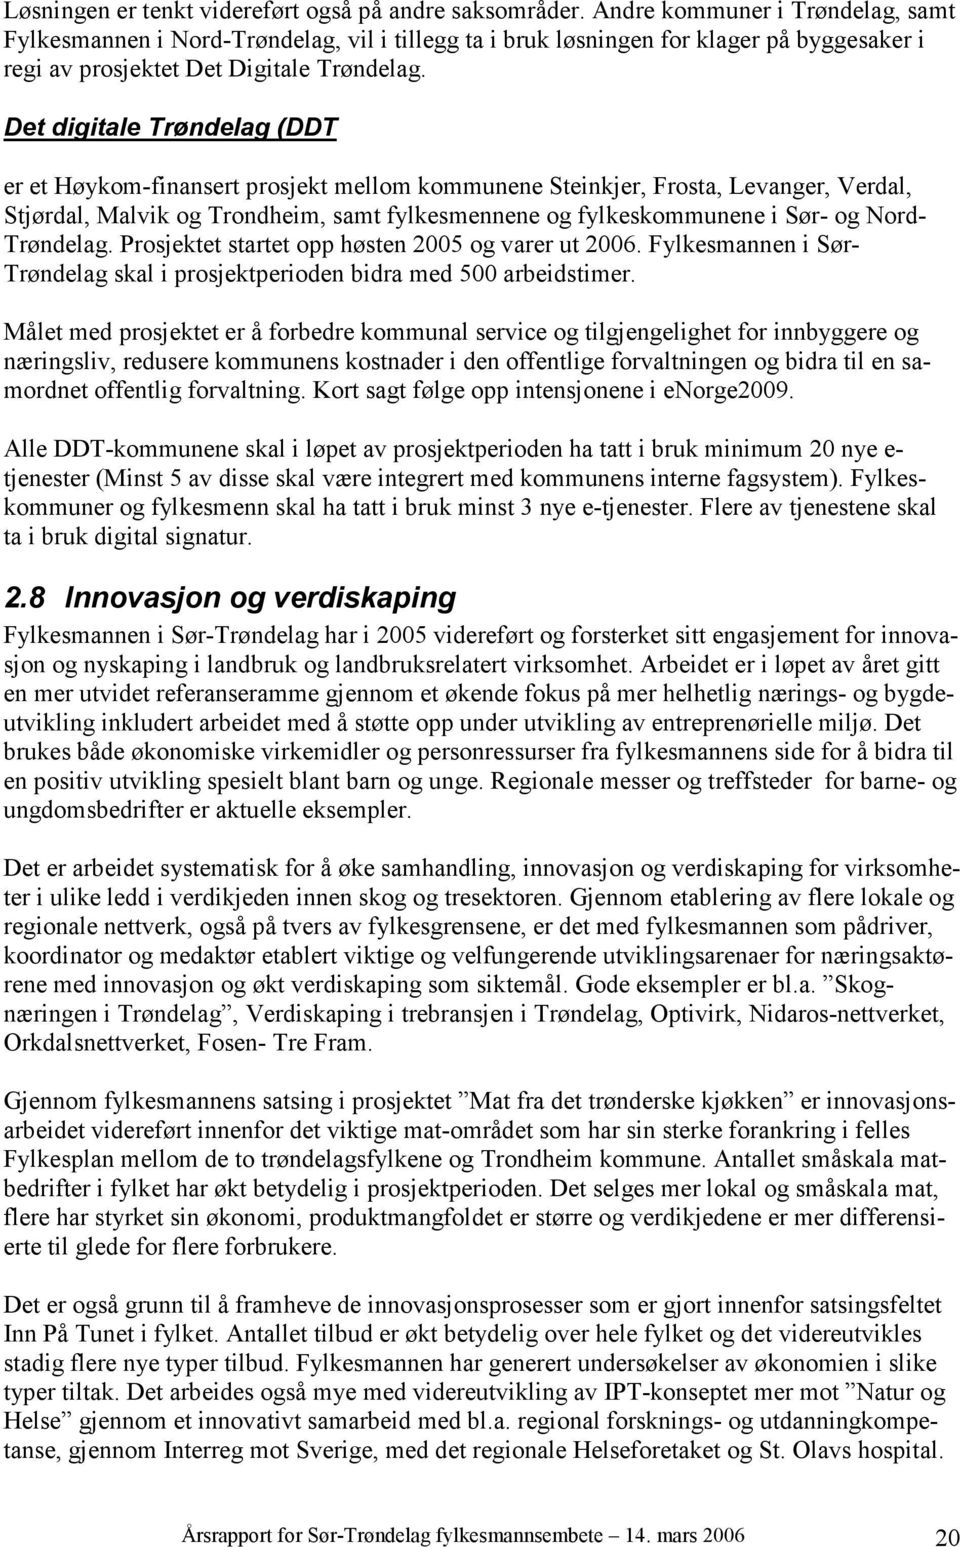 Det digitale Trøndelag (DDT er et Høykom-finansert prosjekt mellom kommunene Steinkjer, Frosta, Levanger, Verdal, Stjørdal, Malvik og Trondheim, samt fylkesmennene og fylkeskommunene i Sør- og Nord-